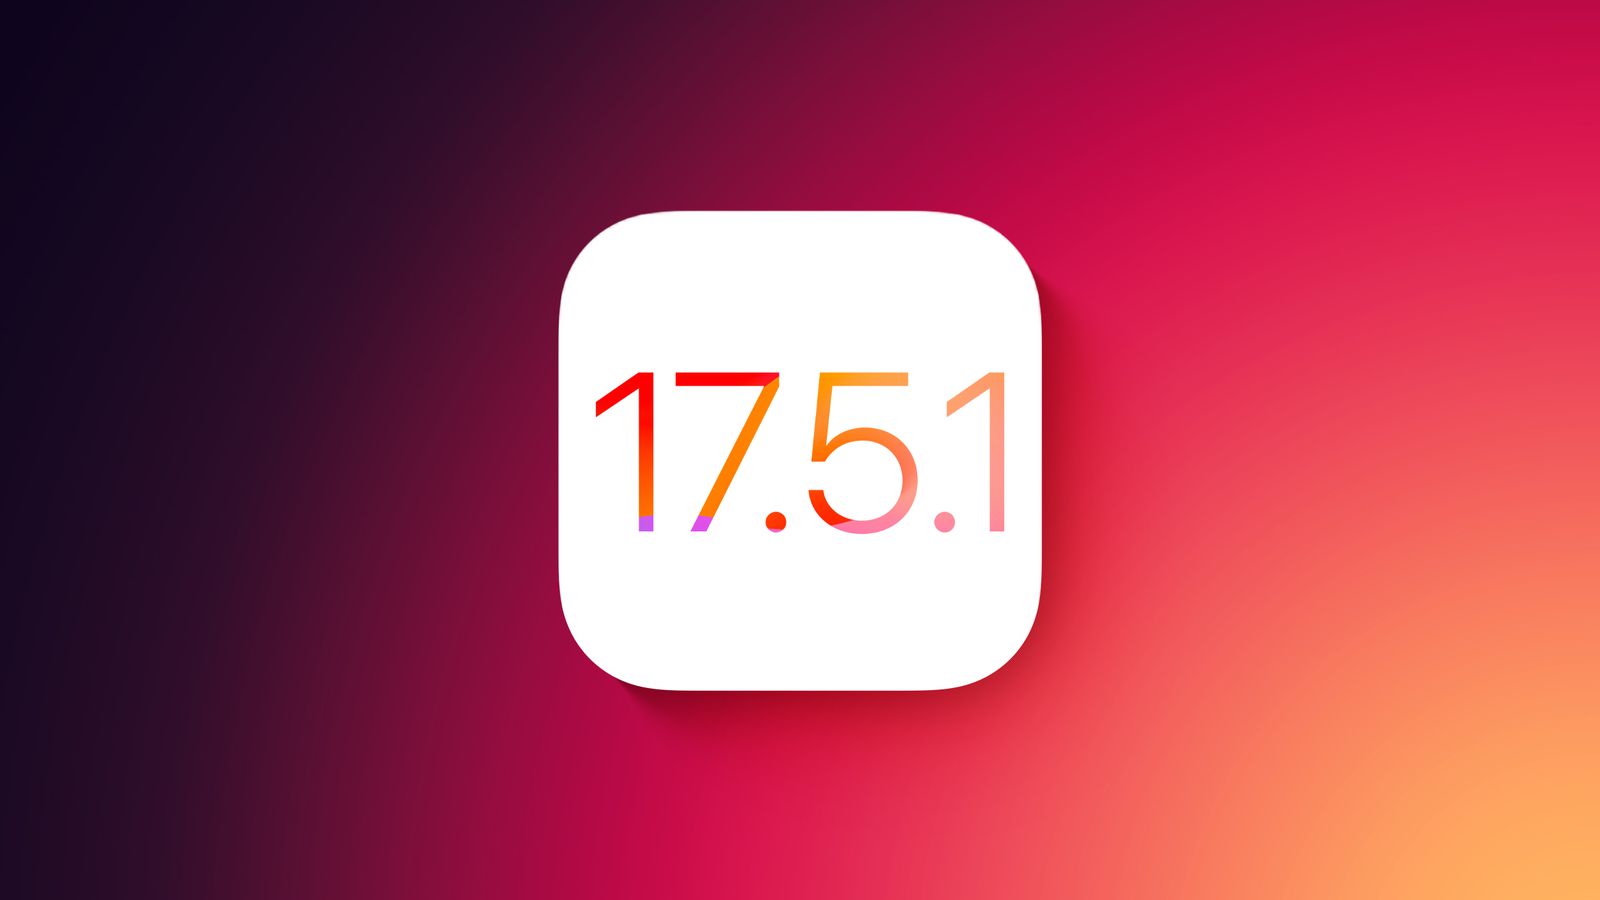 Apple hat das Update iOS 17.5.1 für das iPhone veröffentlicht, das ein Problem mit gelöschten Fotos behebt